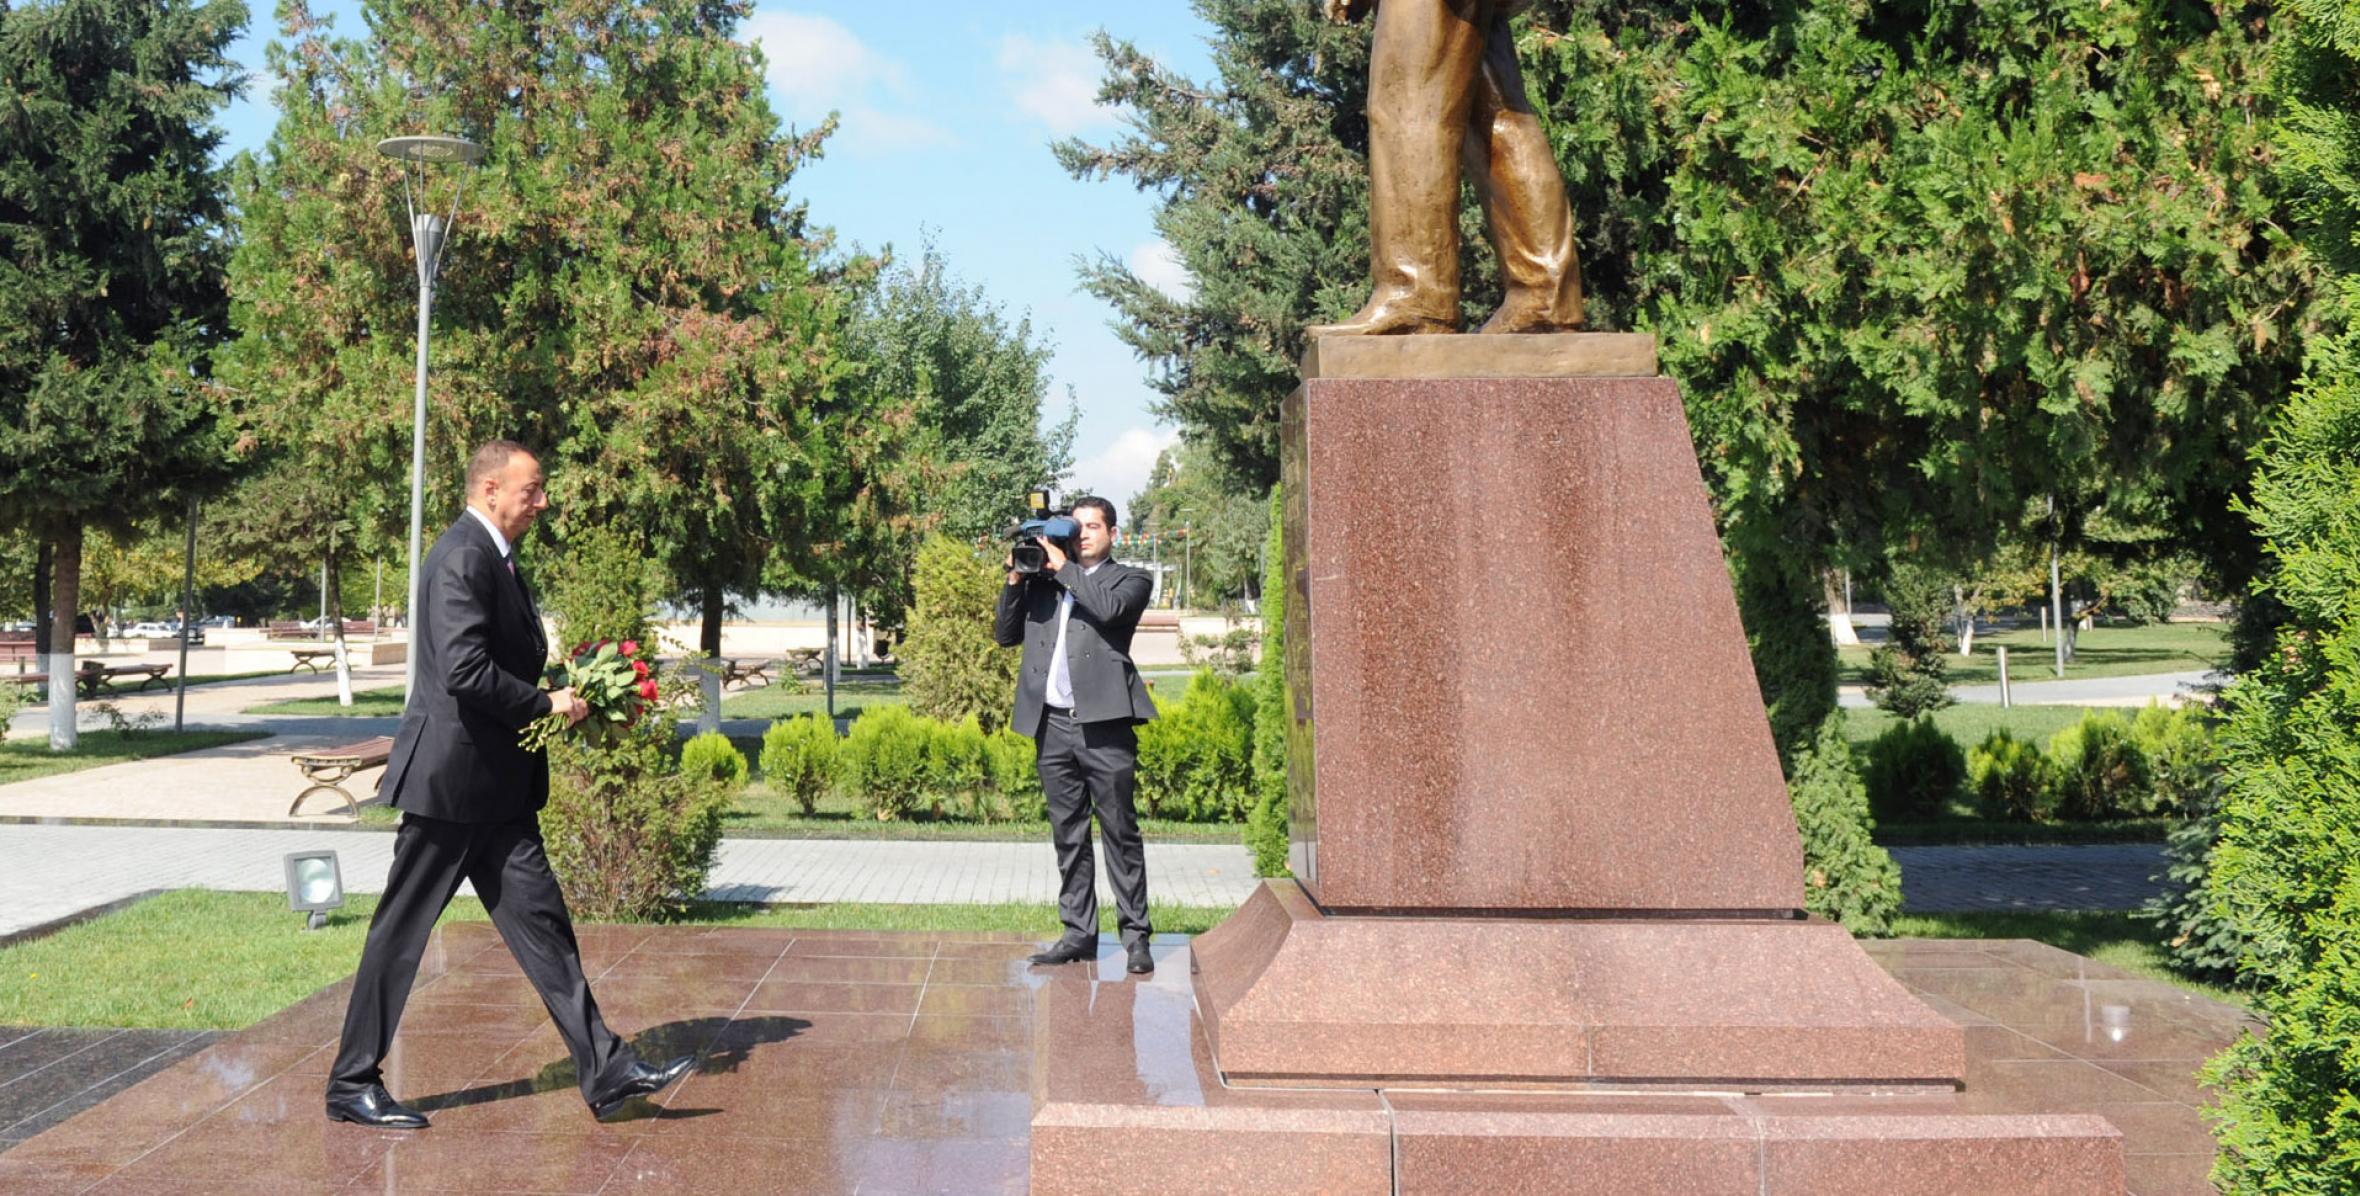 Ilham Aliyev visited the statue of nationwide leader Heydar Aliyev in Gabala